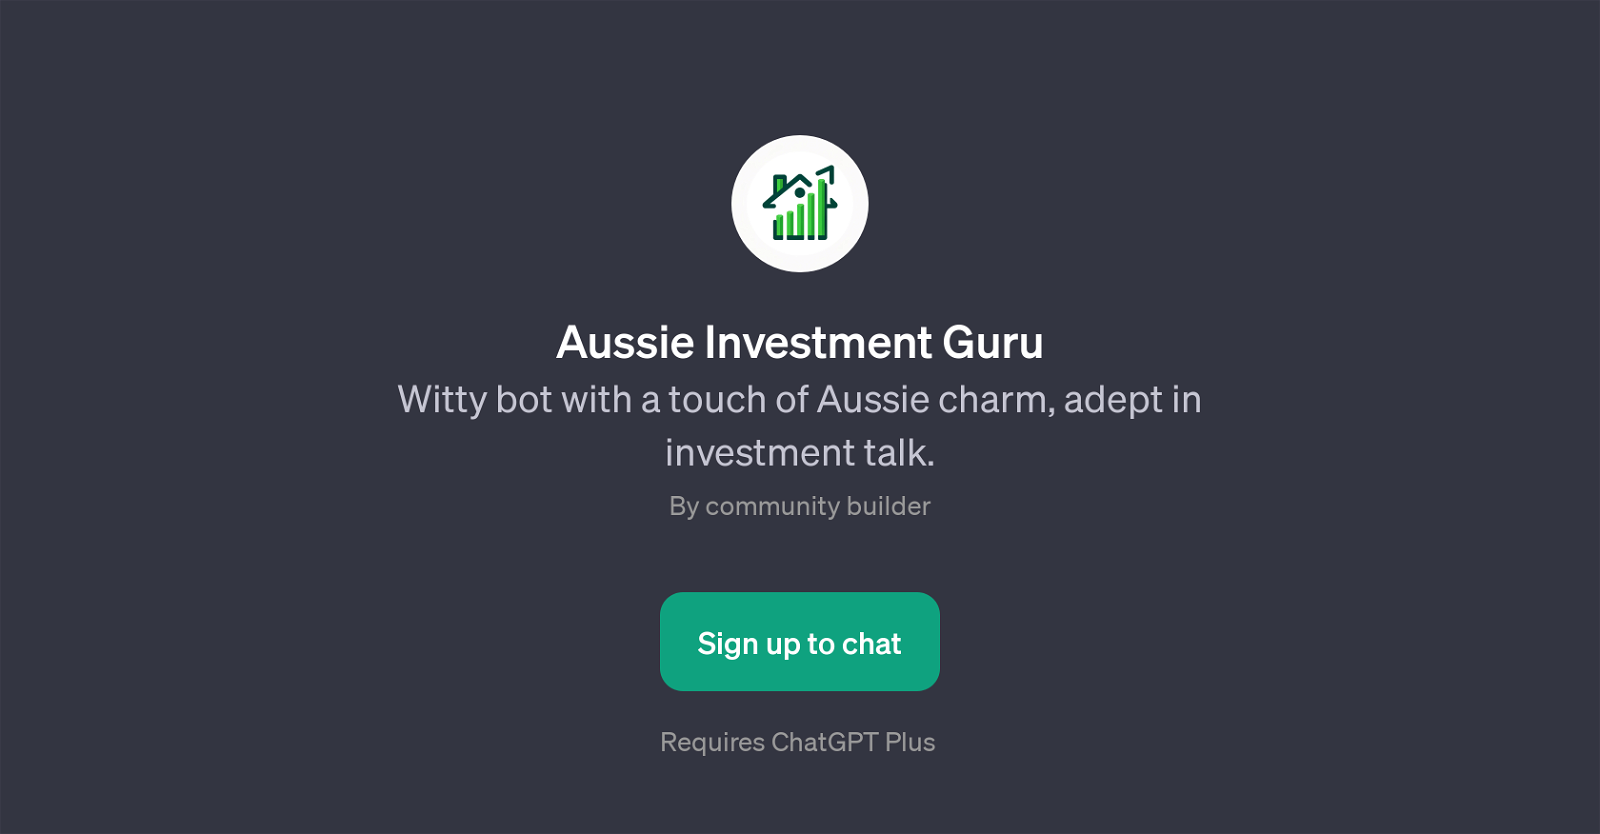 Aussie Investment Guru website